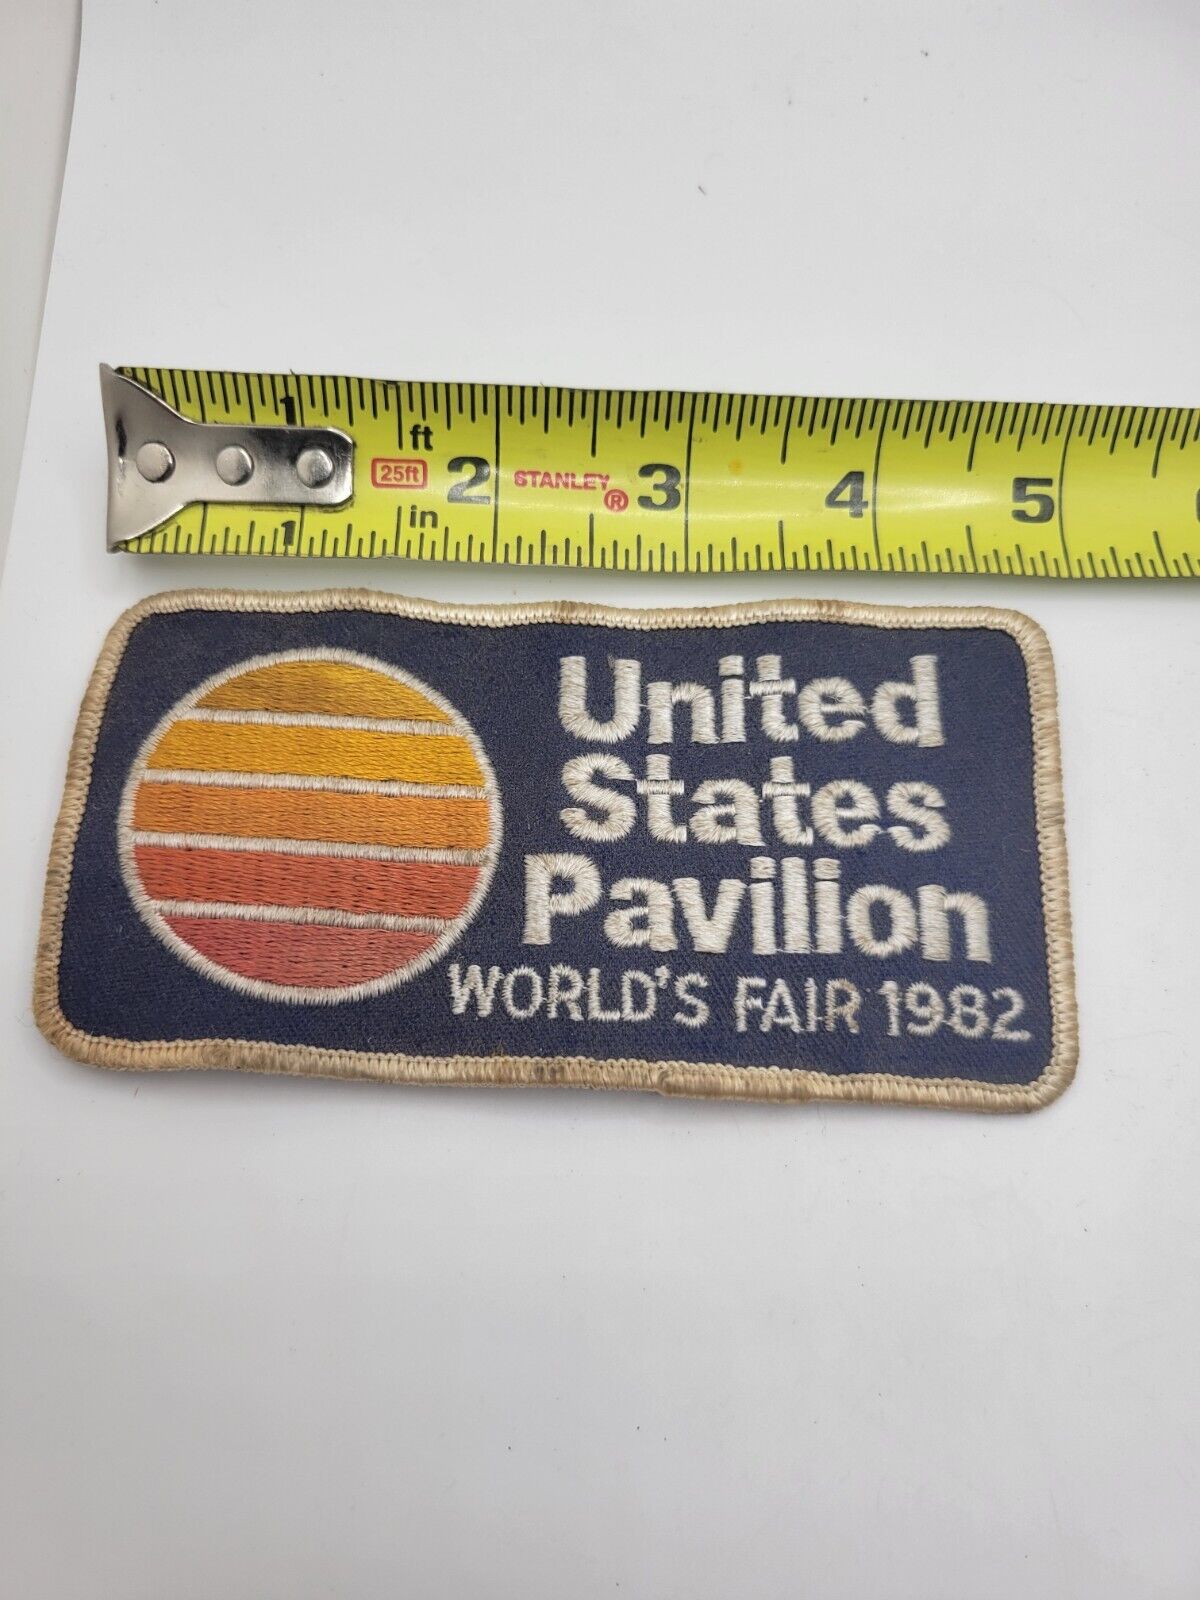 Vintage United States Pavilion World's Fair 1982 Patch